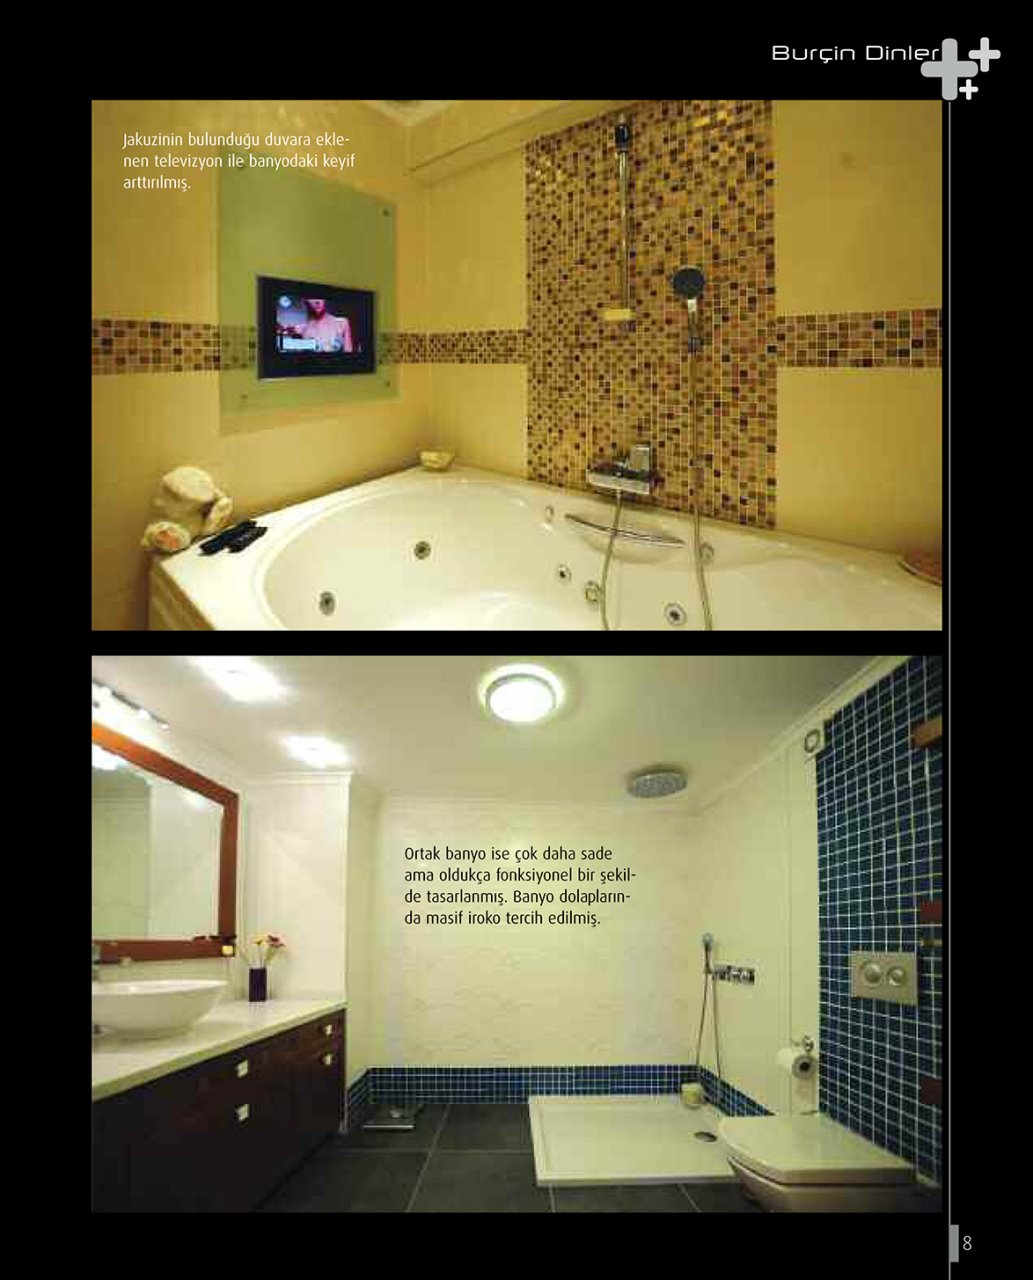 İç Mimarlık & Tasarım Dergisi | September 2011